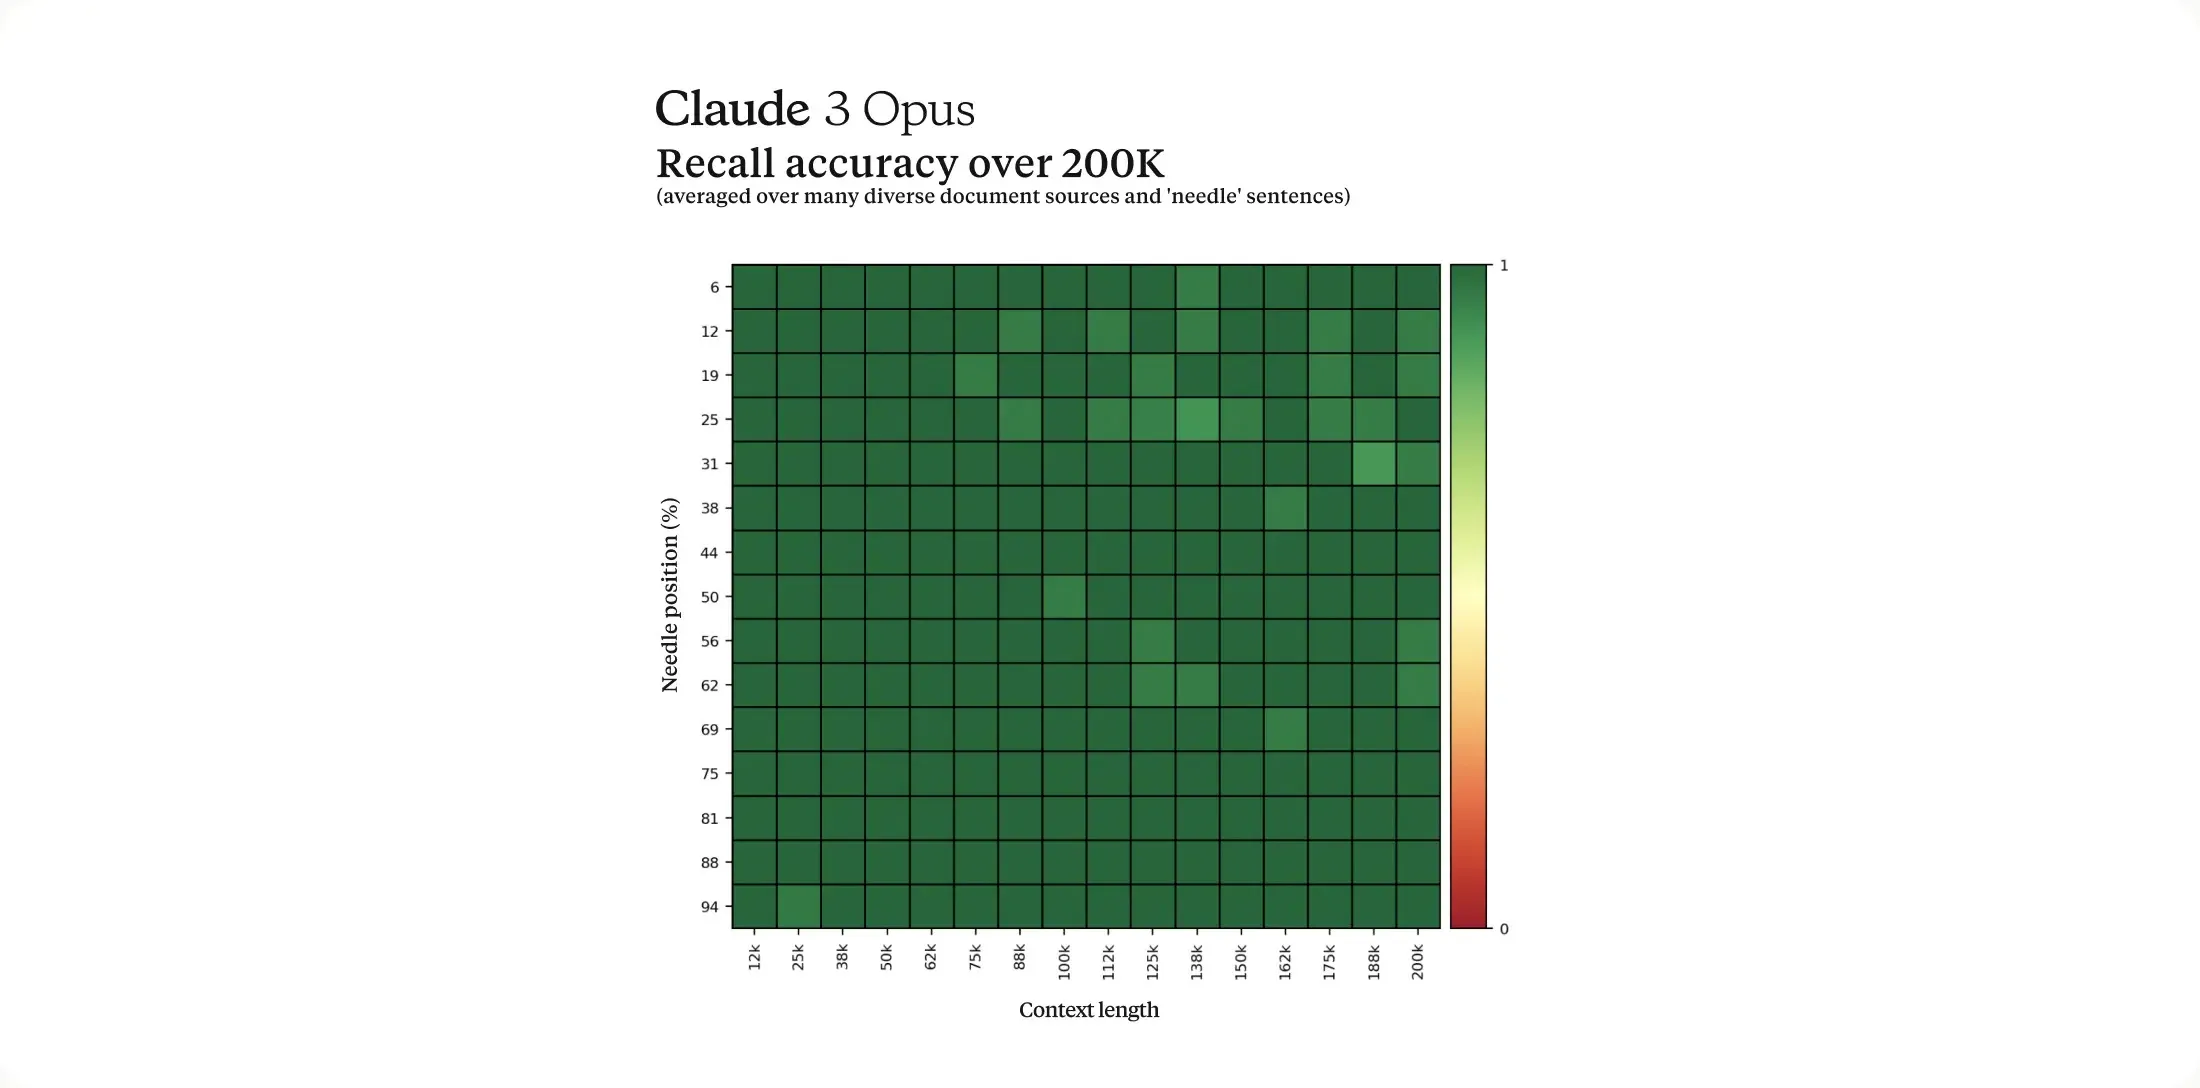 Claude 3 Opus bietet ein Kontextfenster von 200.000 und kann auf bis zu 1 Million Tokens erweitert werden.